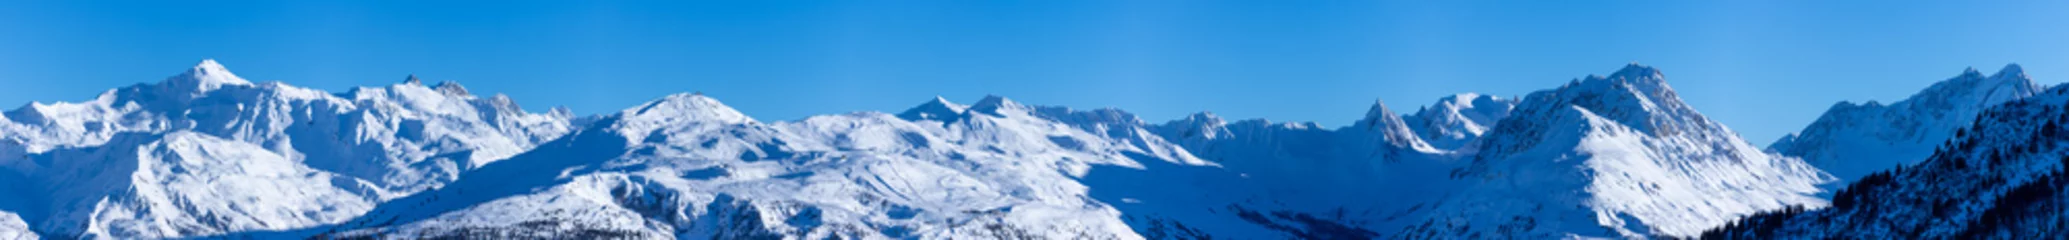 Deurstickers vue ultra panoramique sur une chaîne de montagnes enneigées des alpes © Tof - Photographie